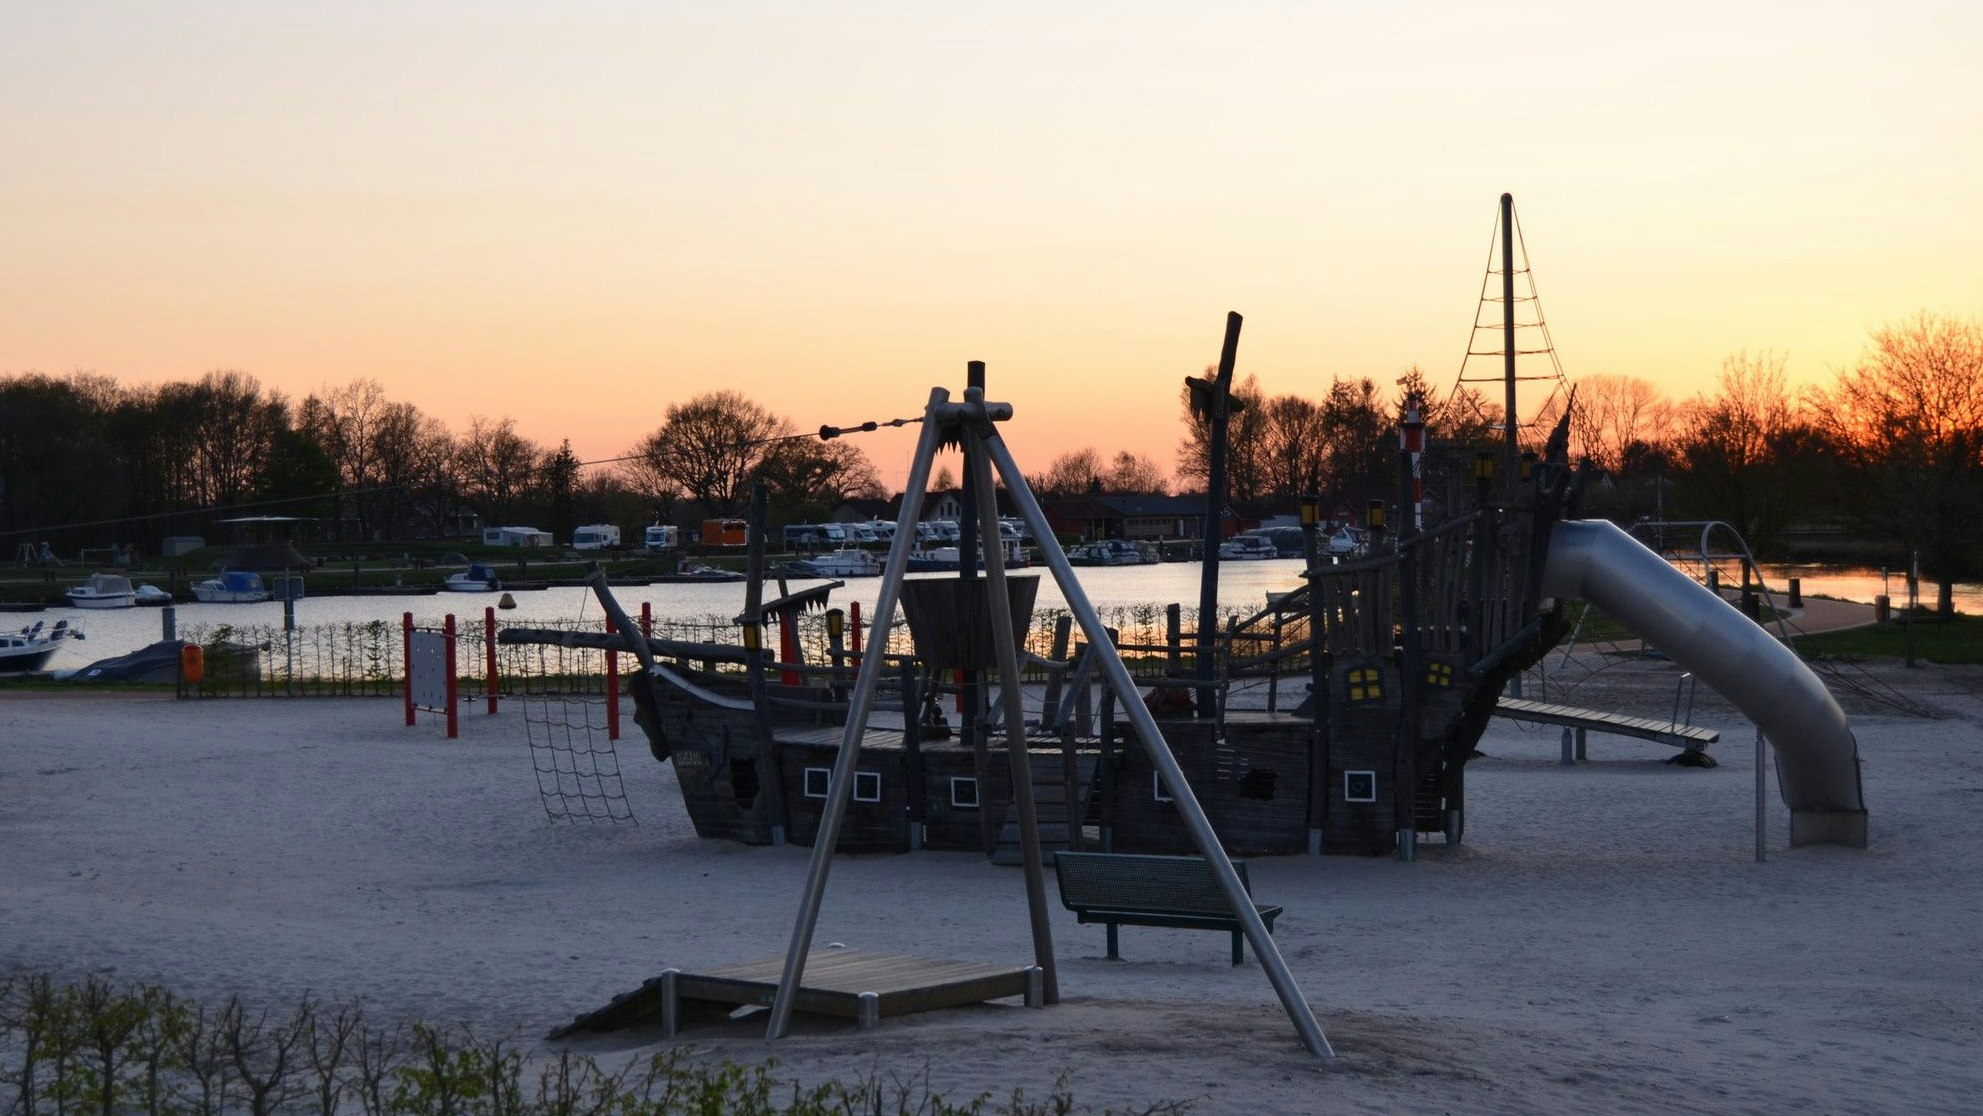 Der Traumspielpark am Barßeler Hafen in der Abendsonne. Die Gemeinde plant, ein neues Großspielgerät dafür anzuschaffen. Welches genommen wird, darüber entscheiden alle Kinder im Gemeindegebiet in einer Abstimmung. Foto: Fertig